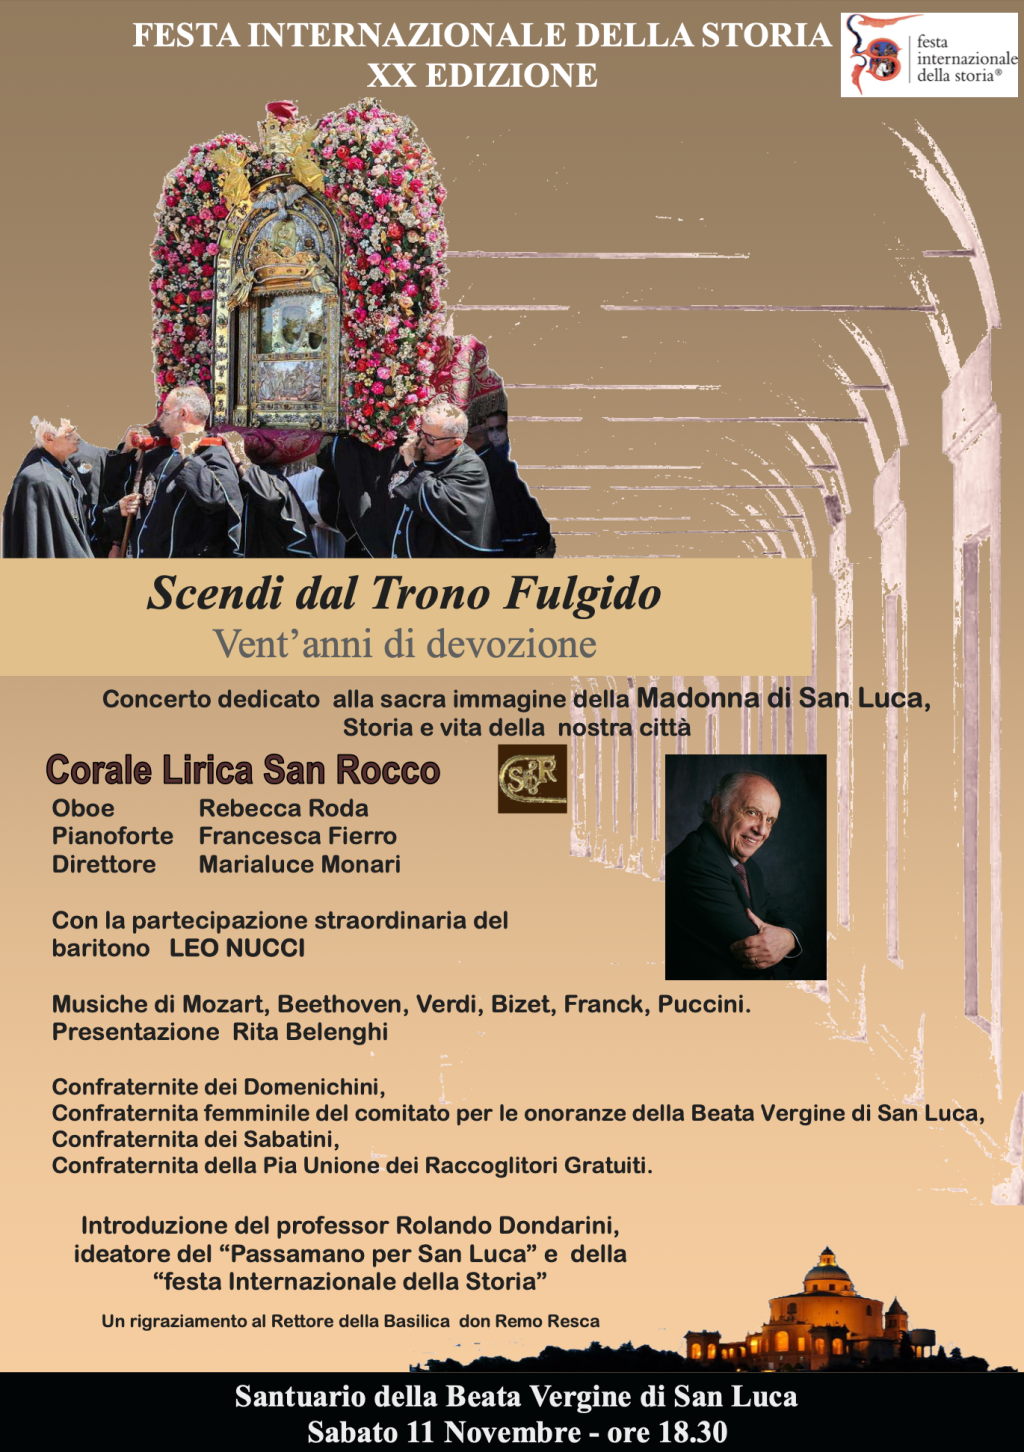 Sabato 11 Novembre 2023 ore 18,30 in Santuario Leo Nucci in Concerto dedicato alla B.V. di San Luca